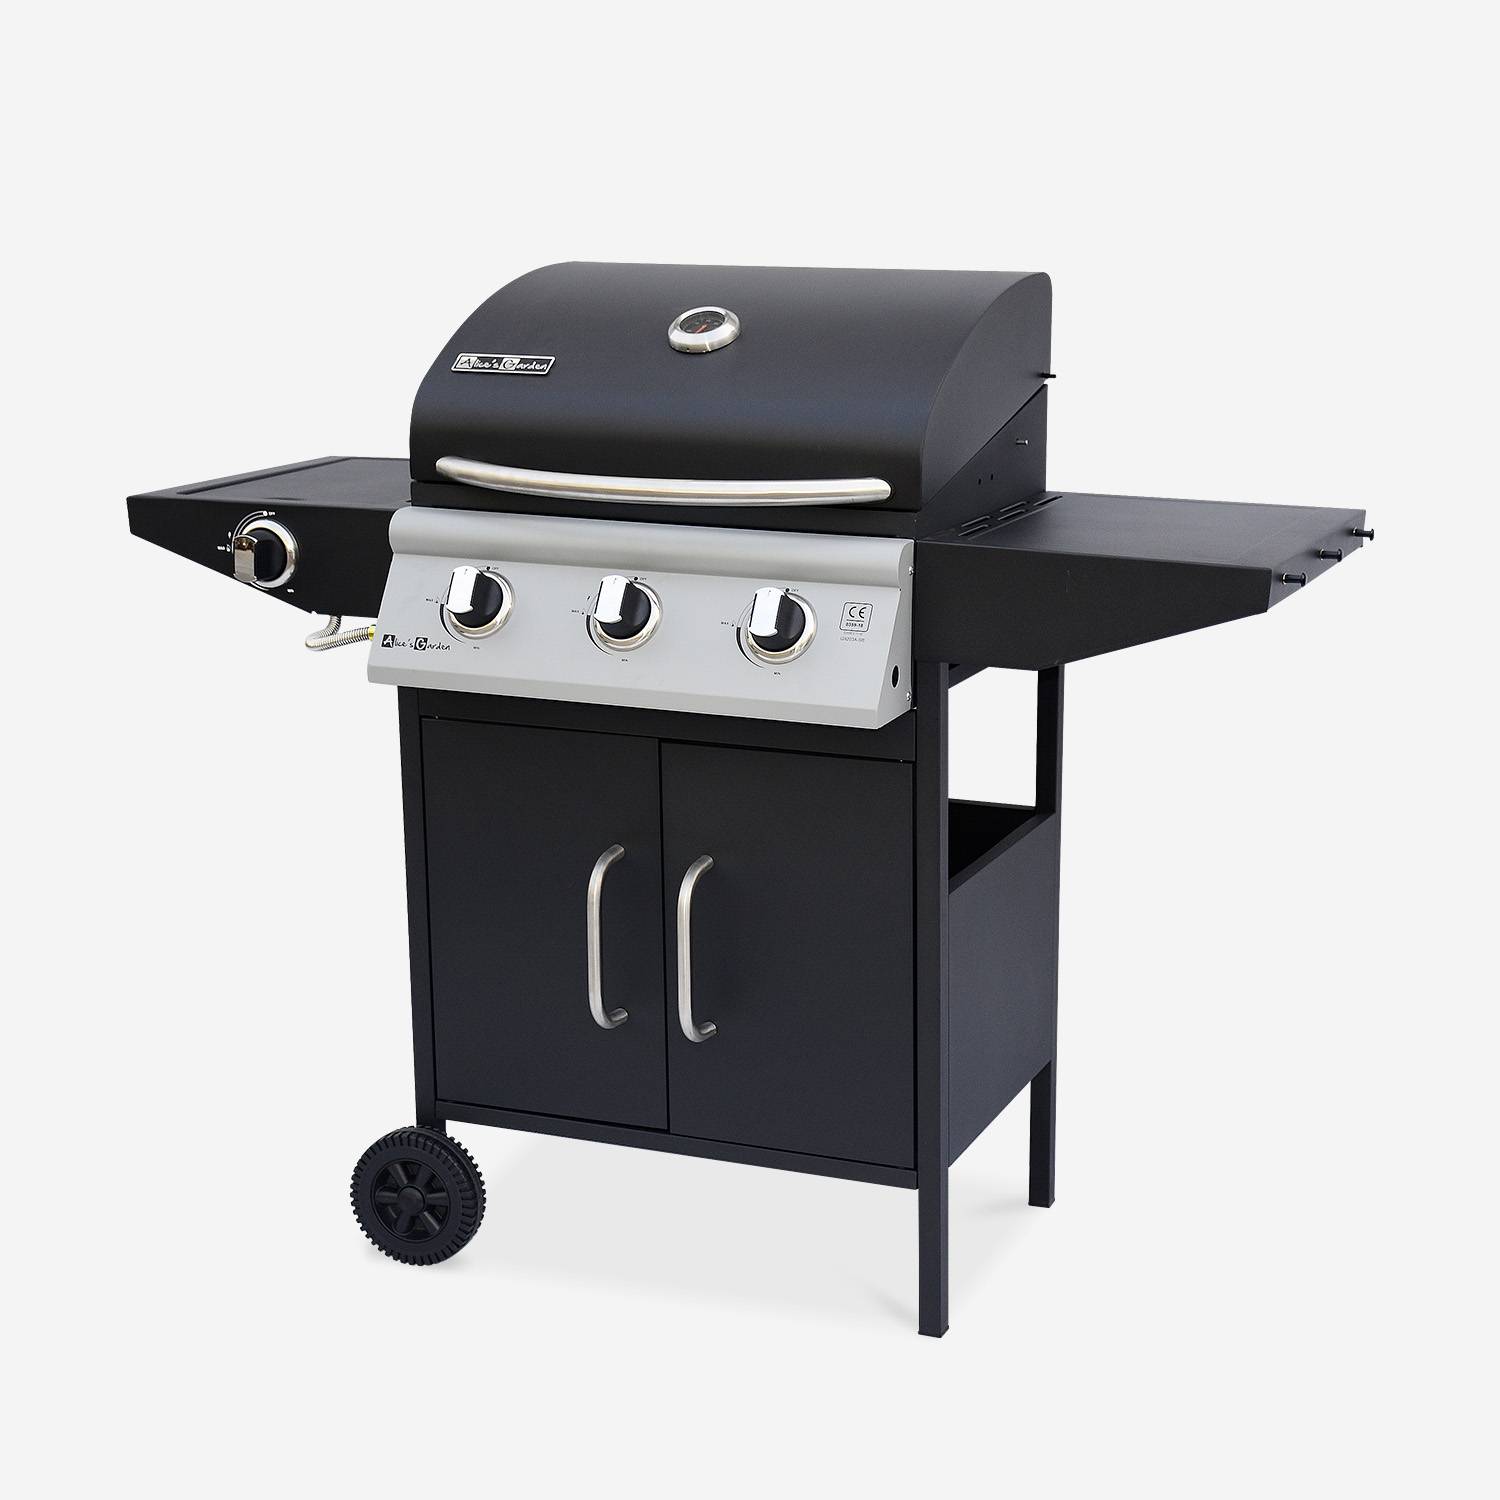 Barbecue gaz - Athos - Barbecue 4 brûleurs dont 1 feu latéral noir, grilles en fonte Photo1